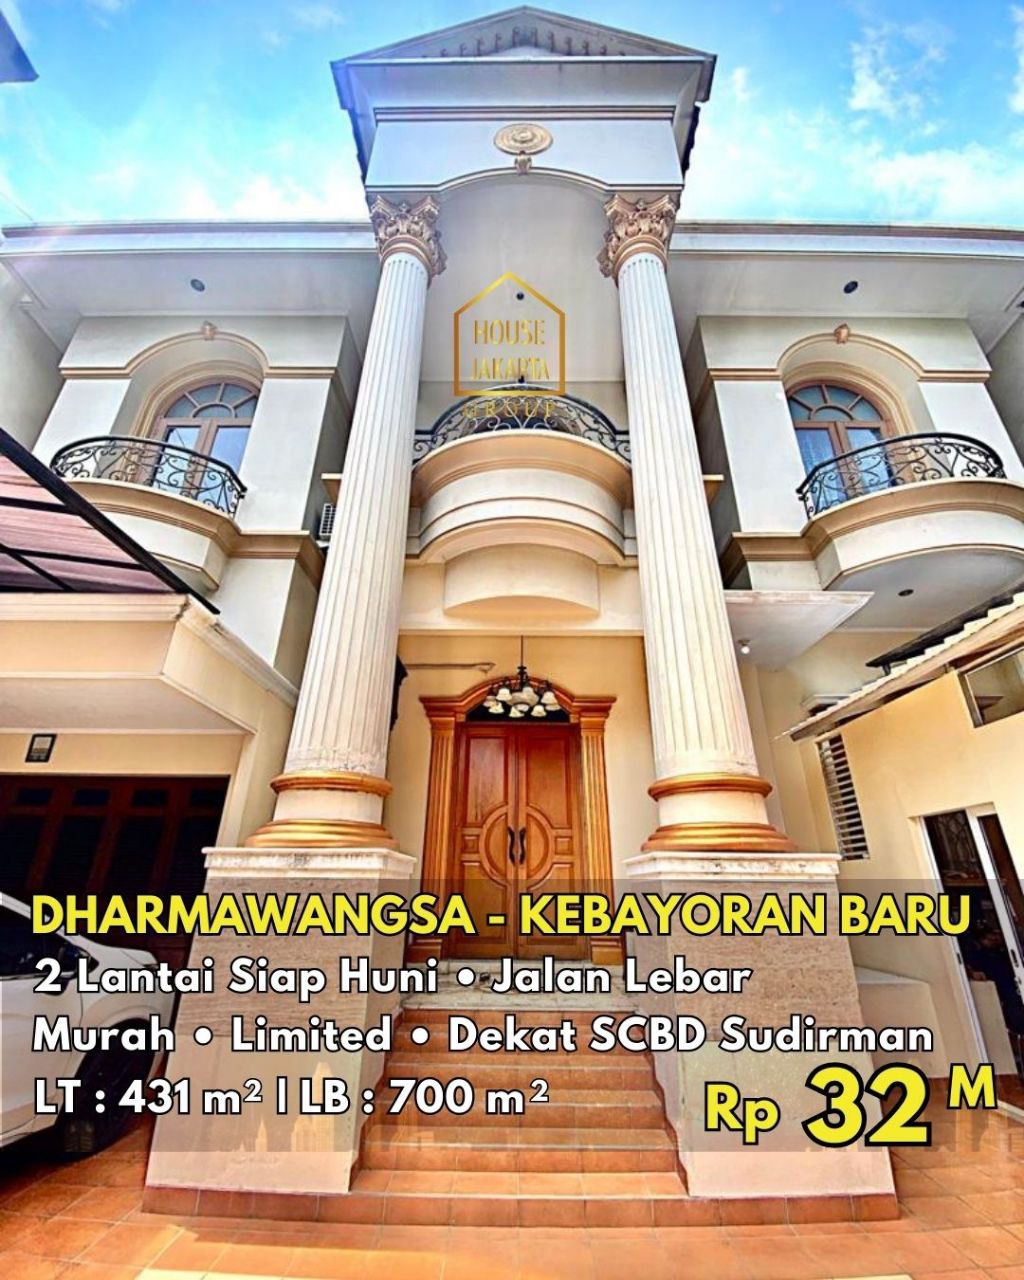 HS1689 Rumah Classic 2 Lantai Siap Huni, Jalan Lebar, Limited, Dekat SCBD Sudirman, Murah